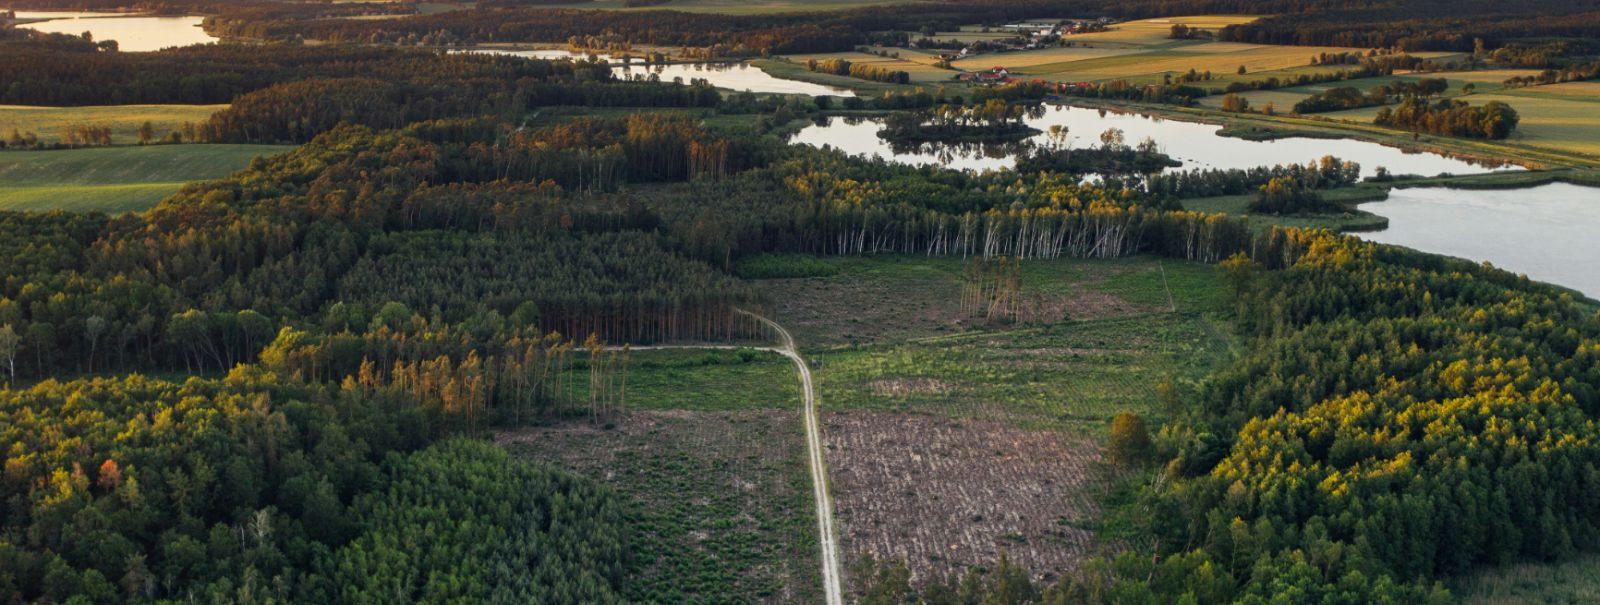 Eesti, oma rikkalike metsadega, mis katab enam kui pool riigist, on pikka aega olnud jätkusuutliku metsanduse praktikate eesrindel. Majanduskasvu ja keskkonnaka